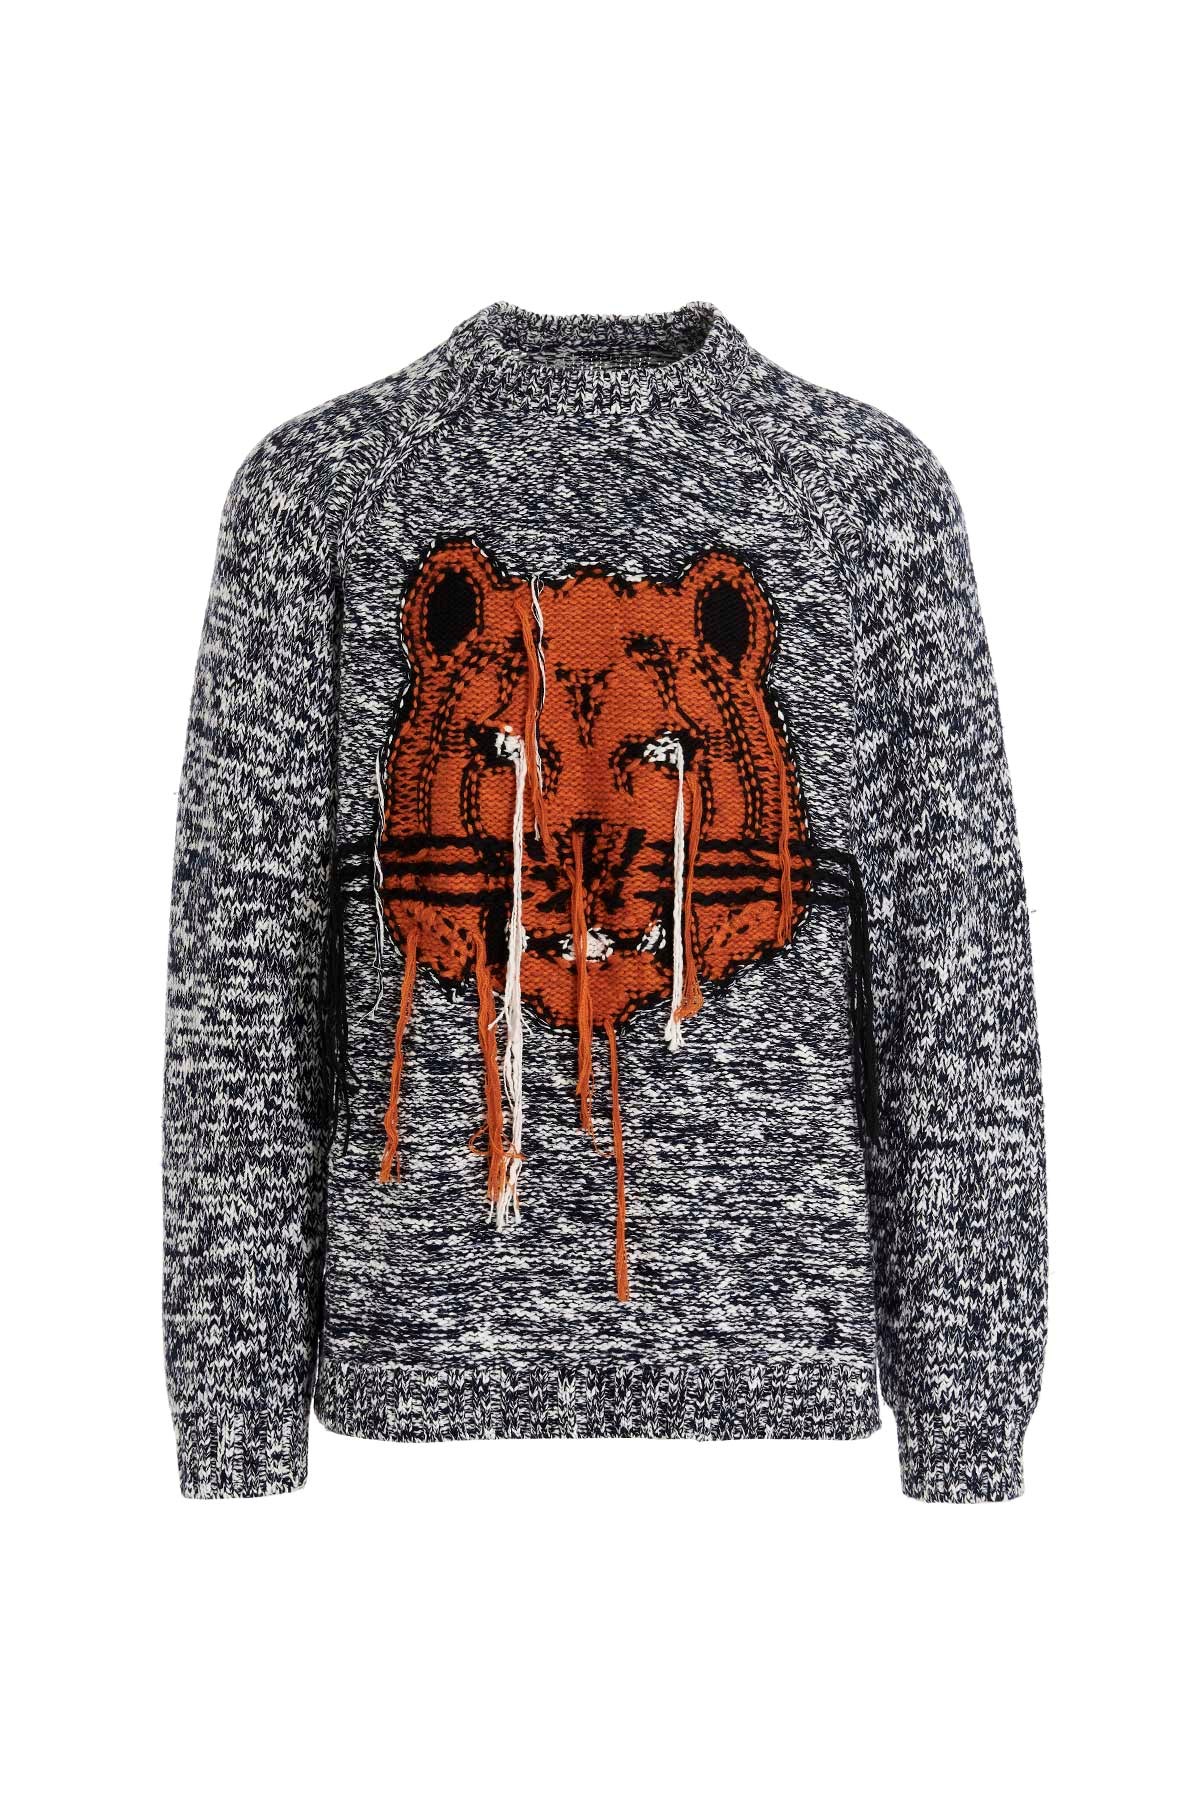 KENZO Tiger Intarsia Sweater